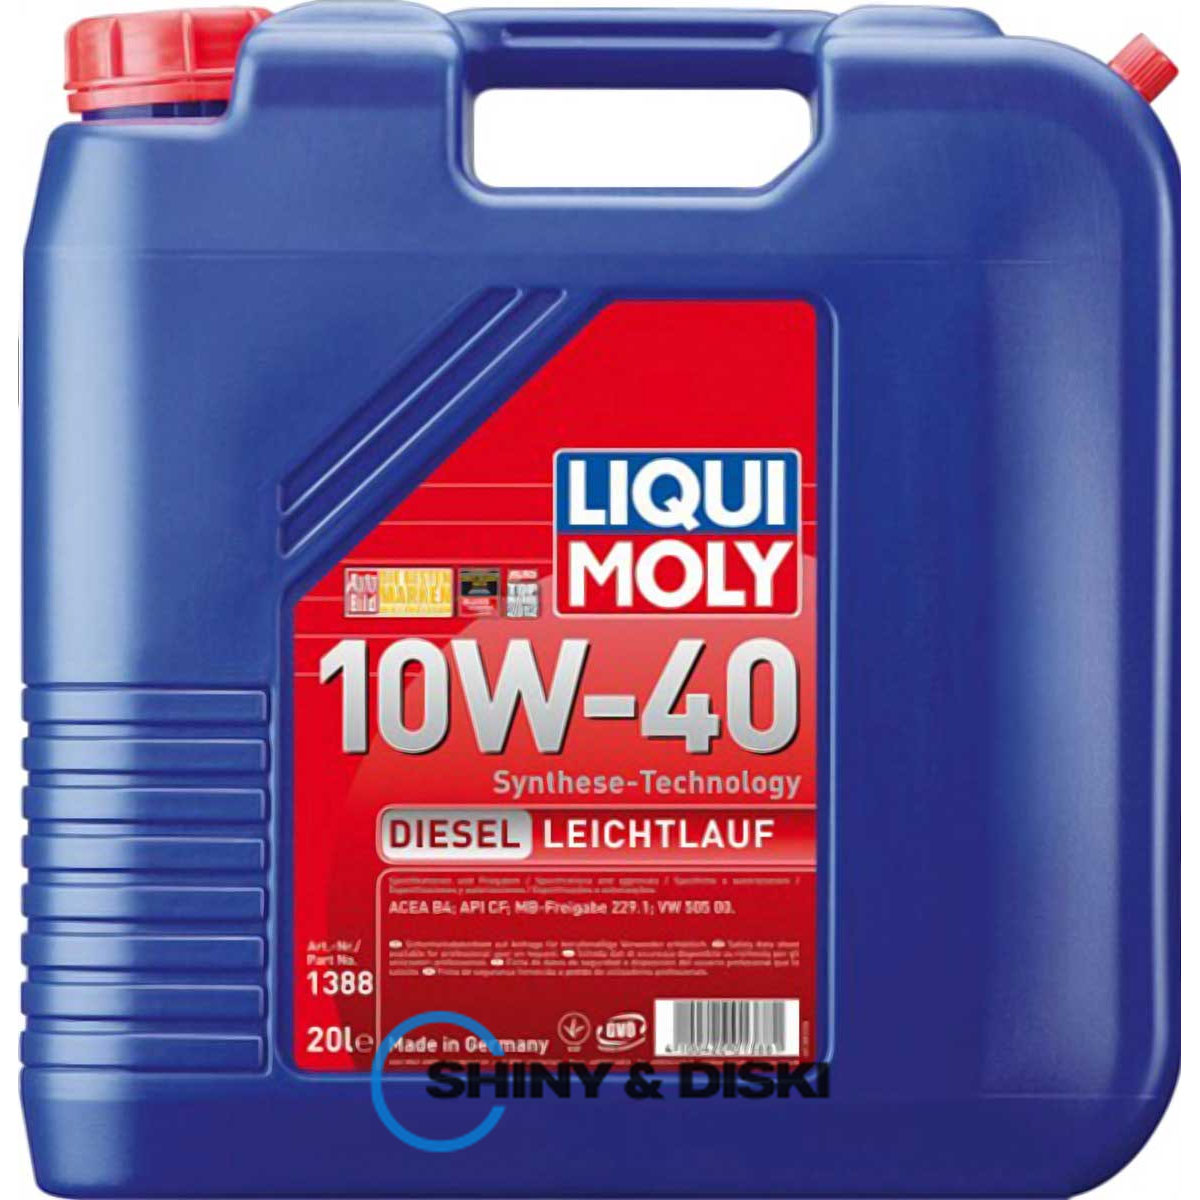 liqui moly diesel leichtlauf 10w-40 (20л)